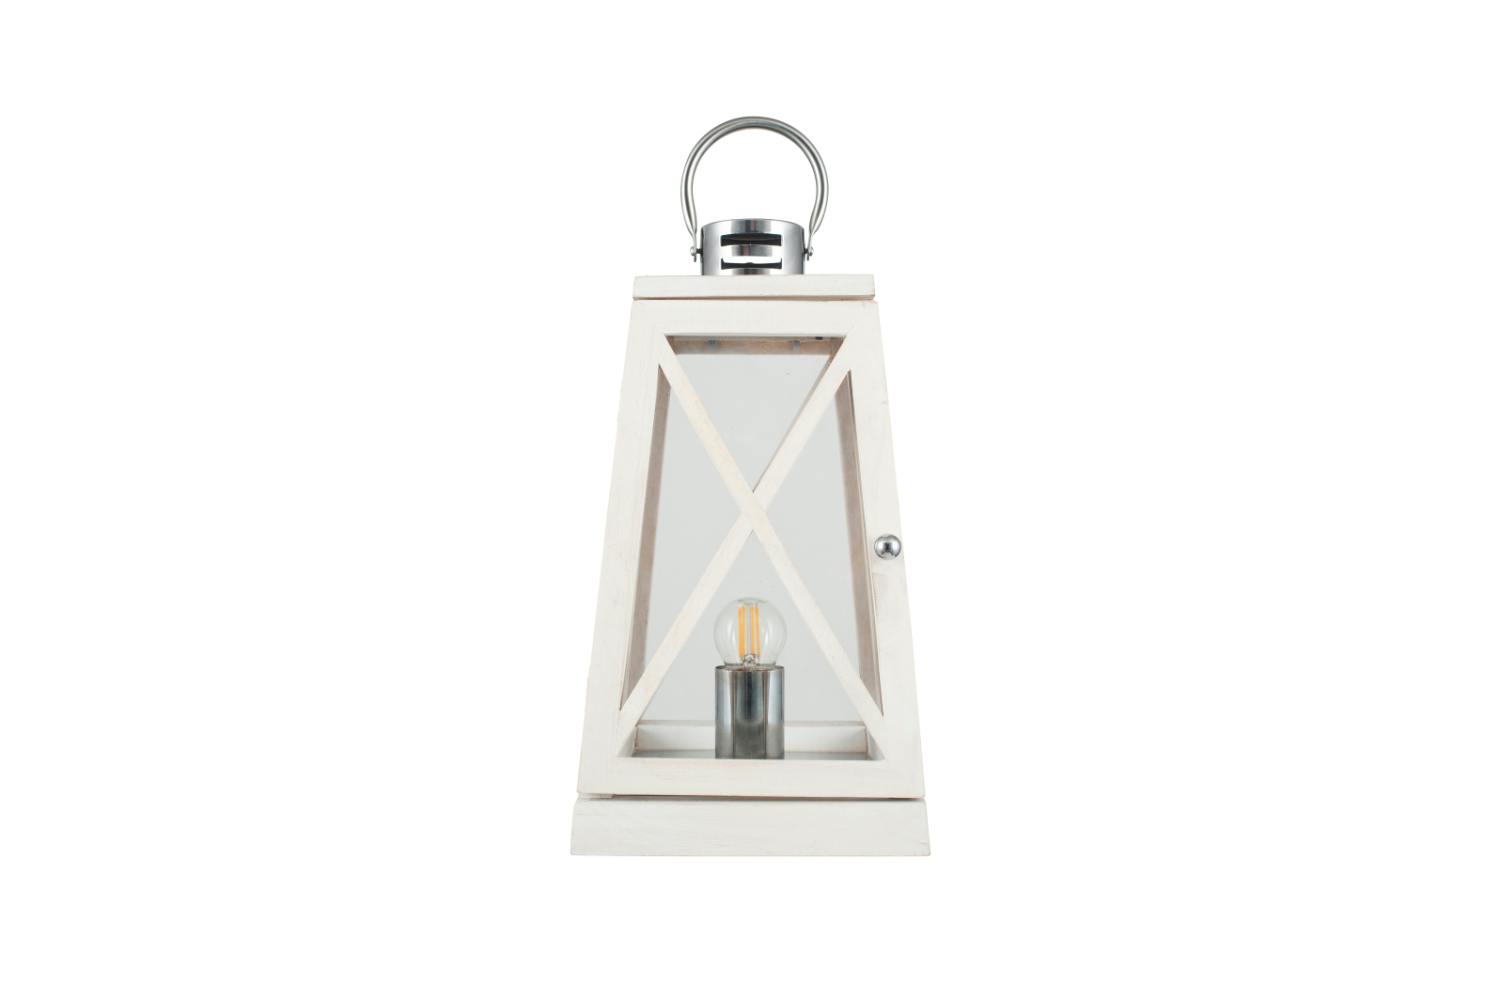 Lantern Table Lamp | White Wash